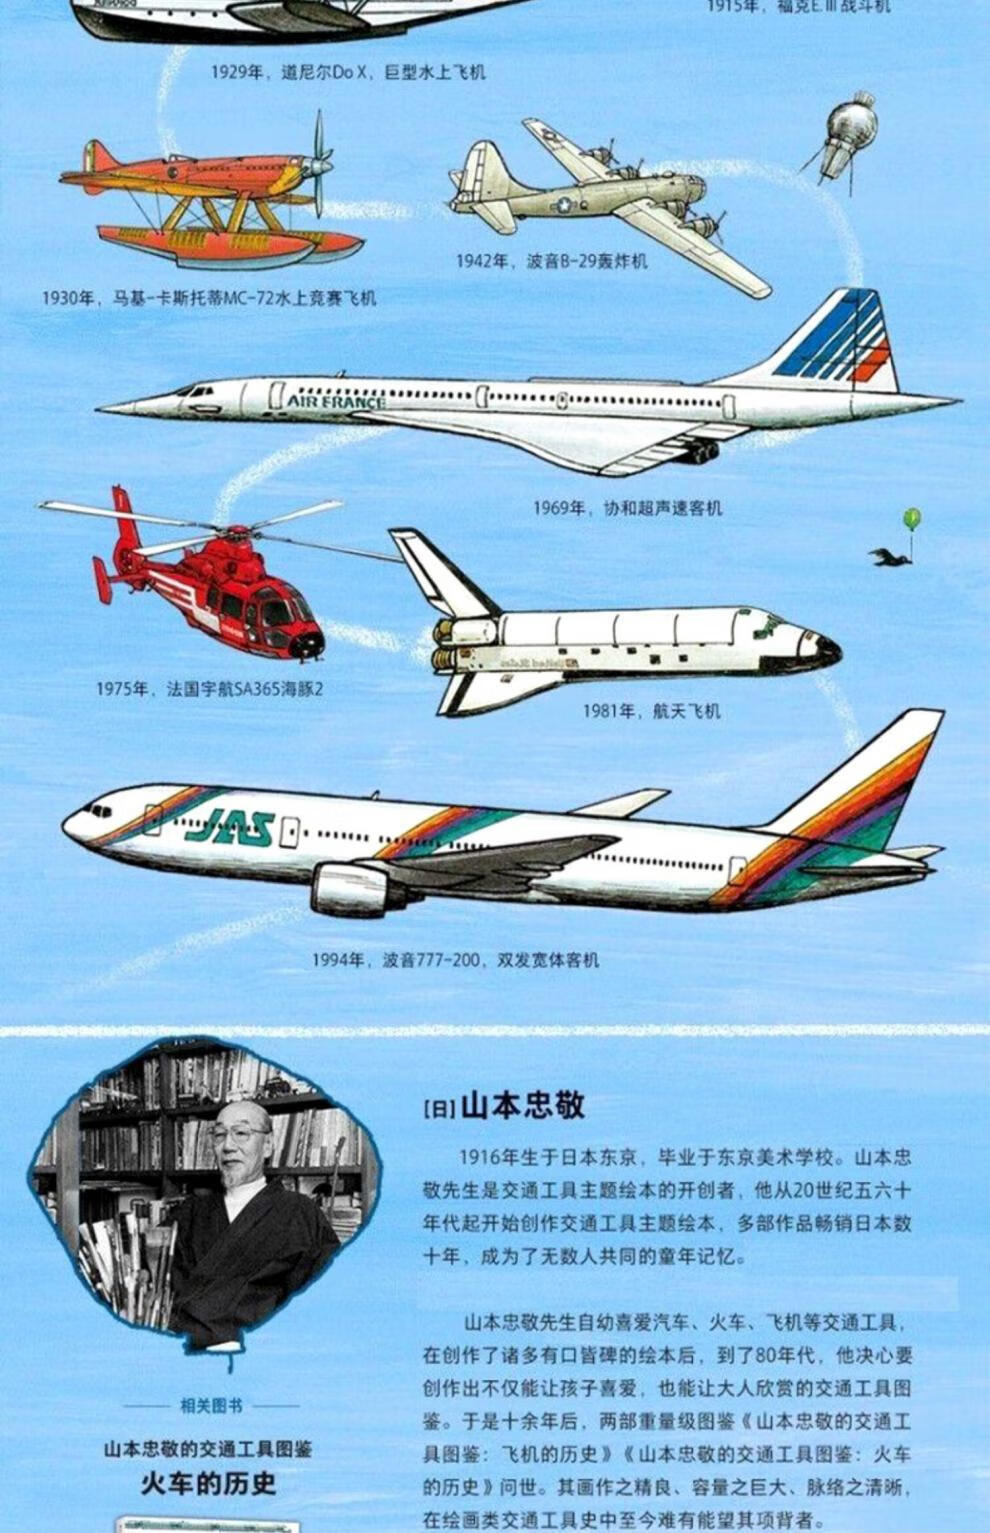 山本忠敬的交通工具图鉴套装2册飞机火车的历史每本300幅精密手绘插图